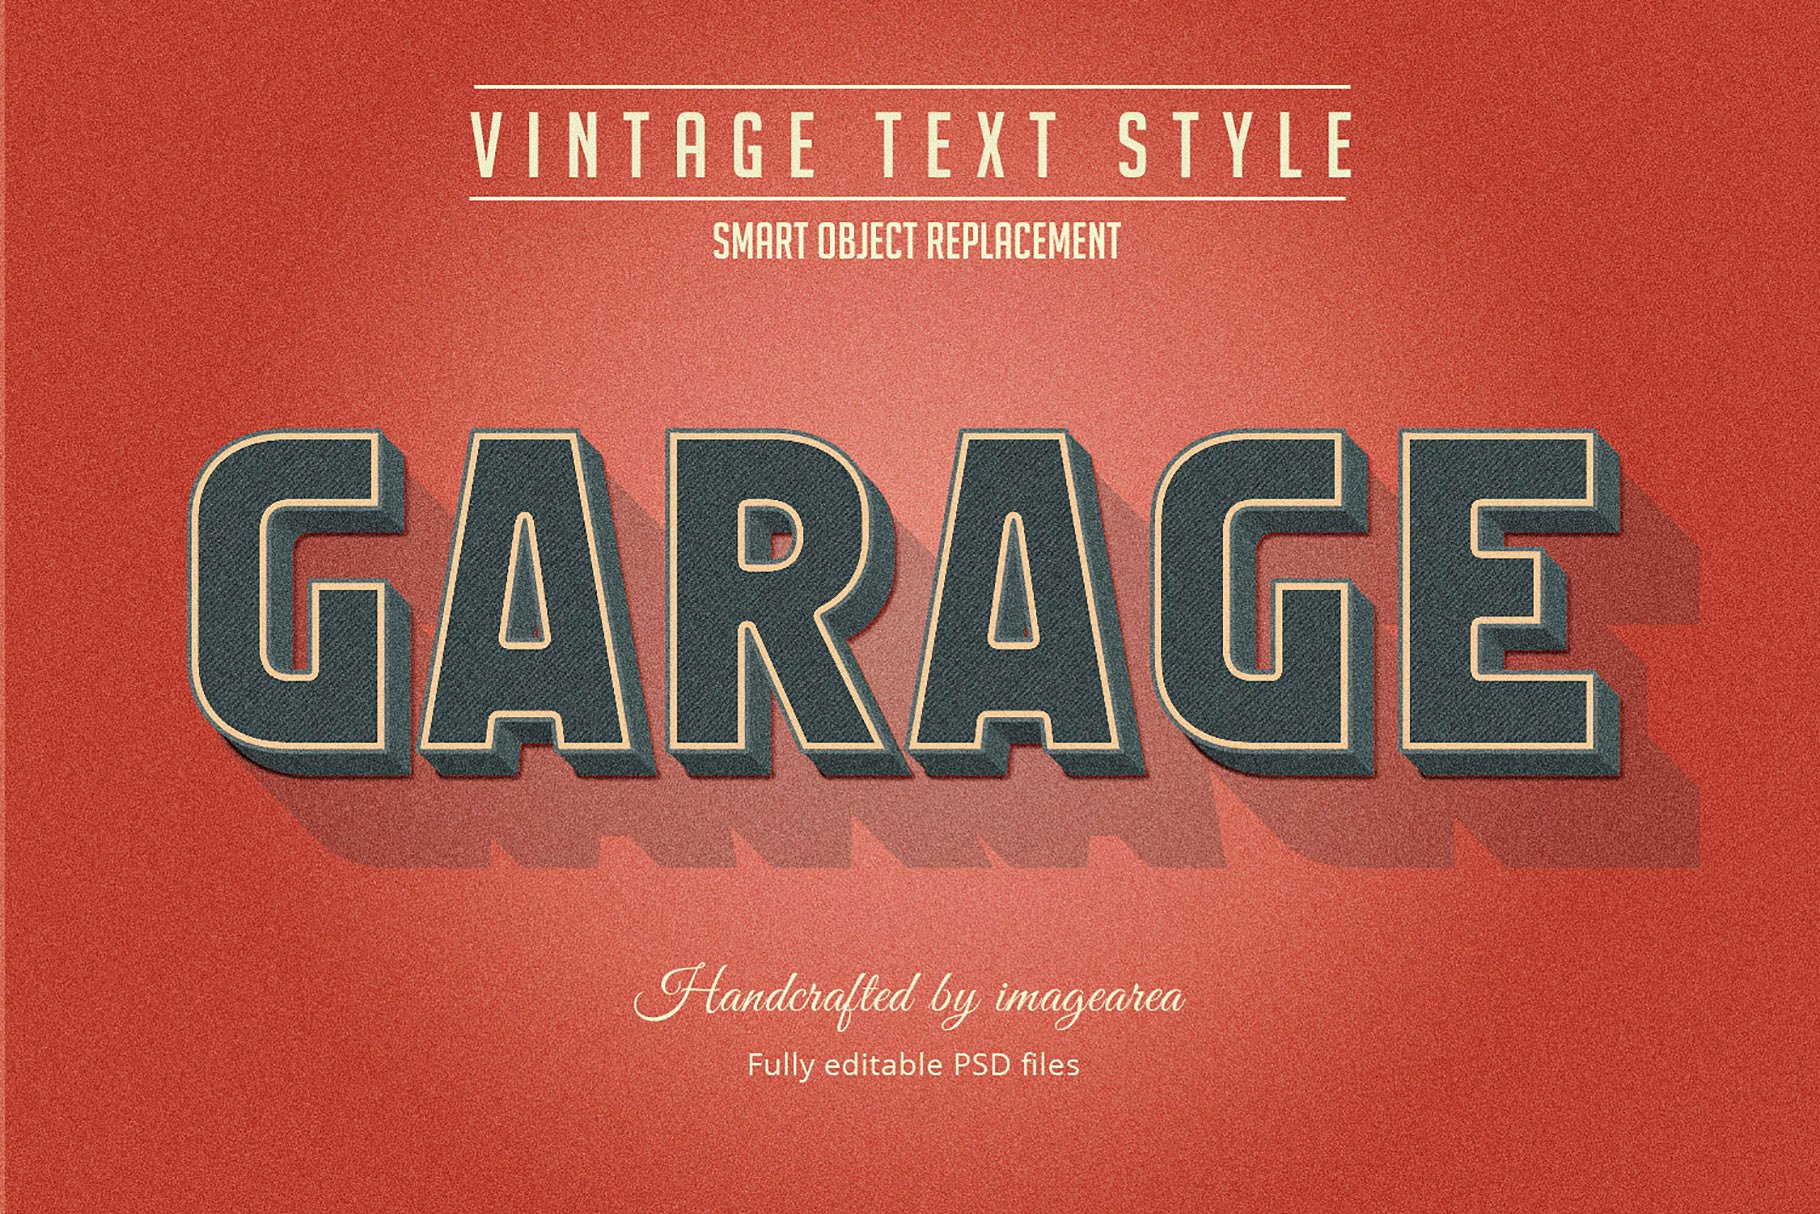 复古条纹风格文本图层样式 Vintage / Retro Text Styles插图10